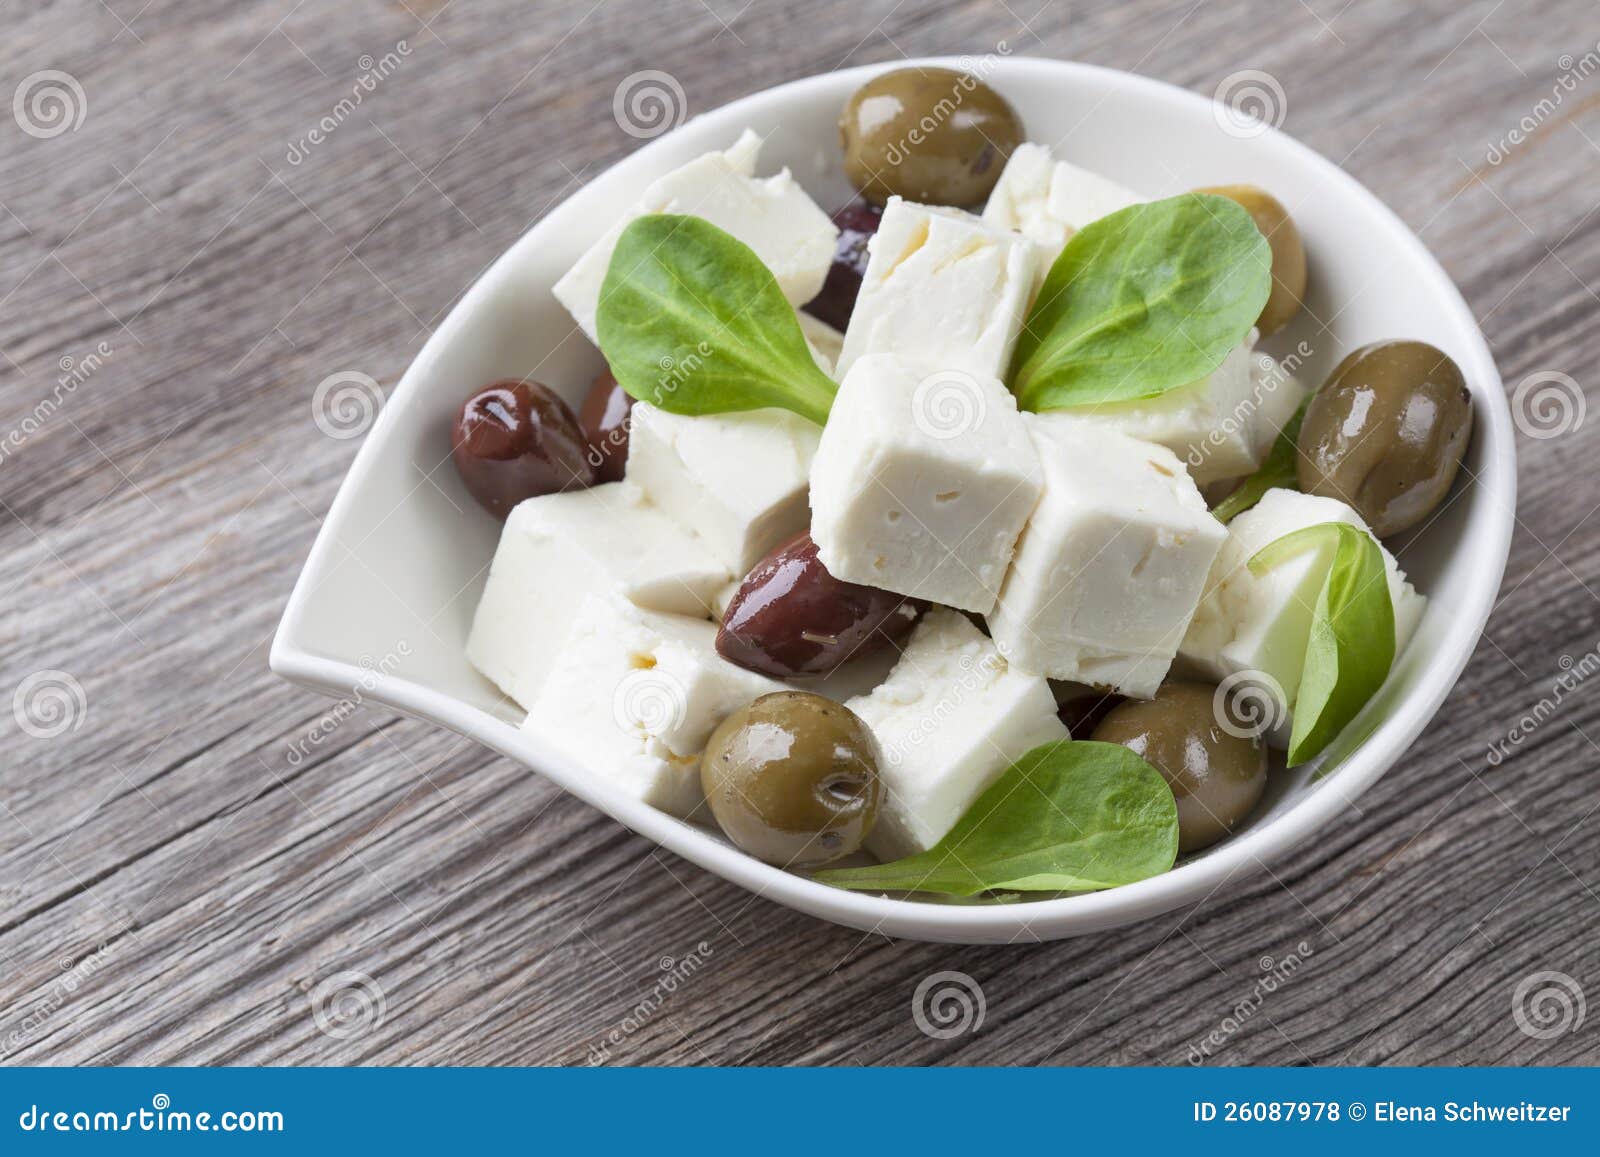 希腊白软干酪 库存图片. 图片 包括有 素食主义者, 传统, 剪切, 特写镜头, 山羊, 苹果酱, 产品 - 111964409